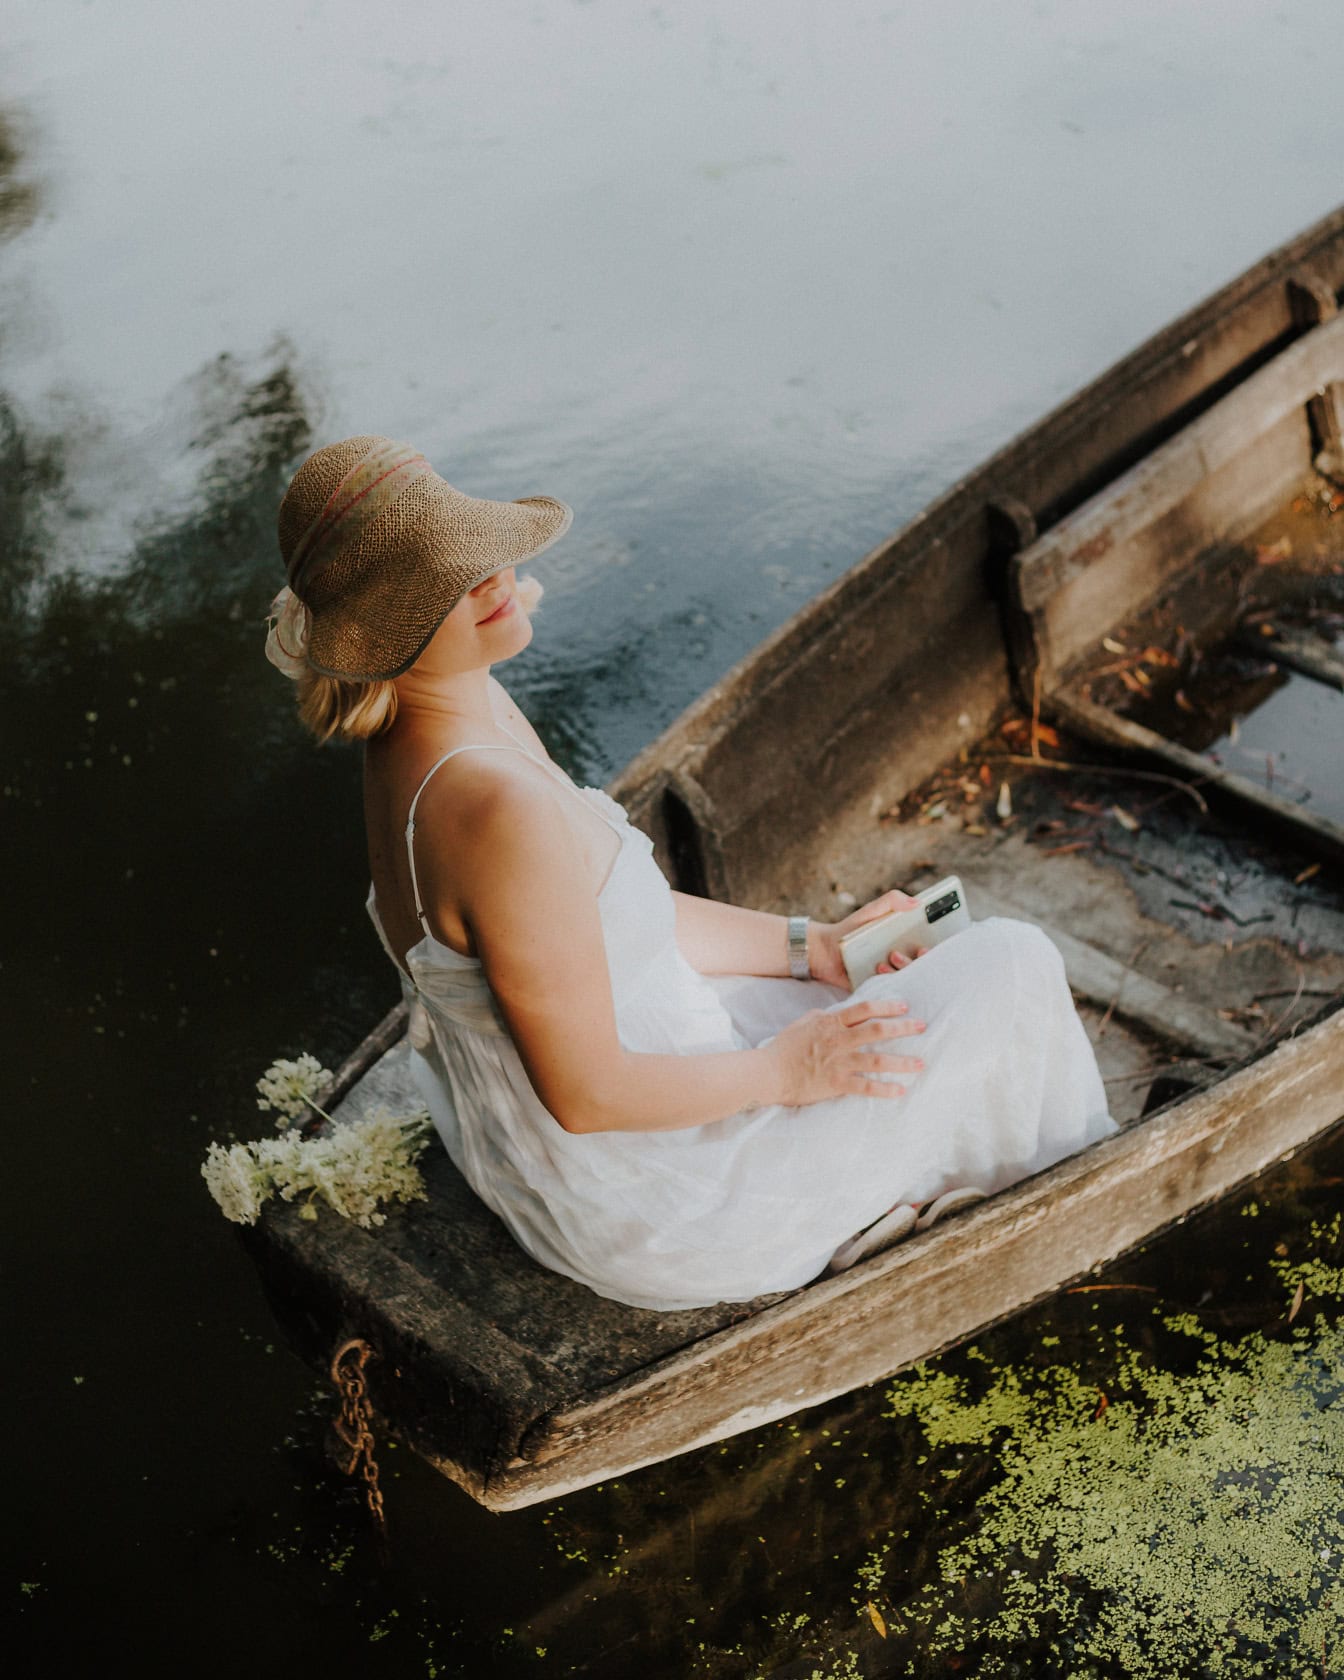 Uma mulher com um vestido branco e um chapéu de palha senta-se em um velho barco de madeira